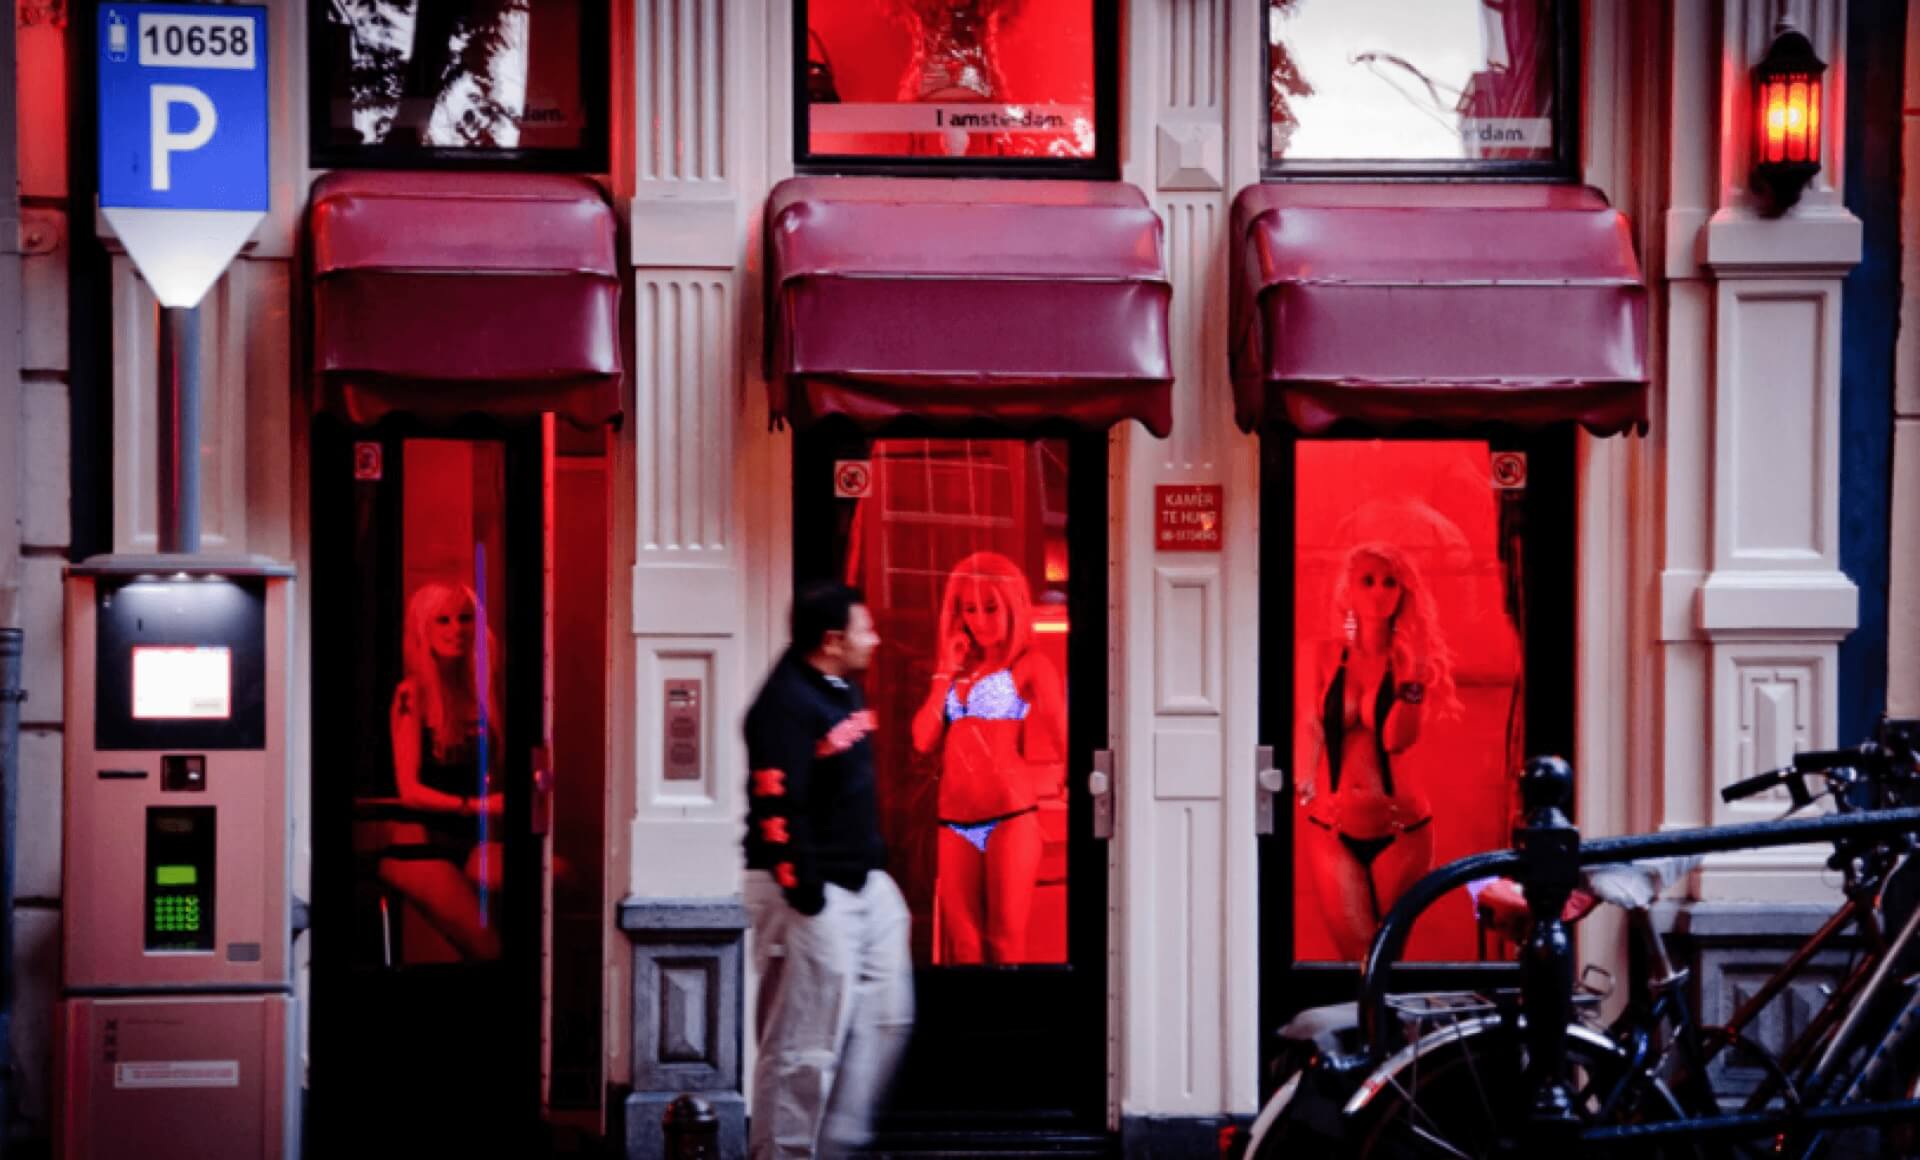 Daerah Lampu Merah di Amsterdam